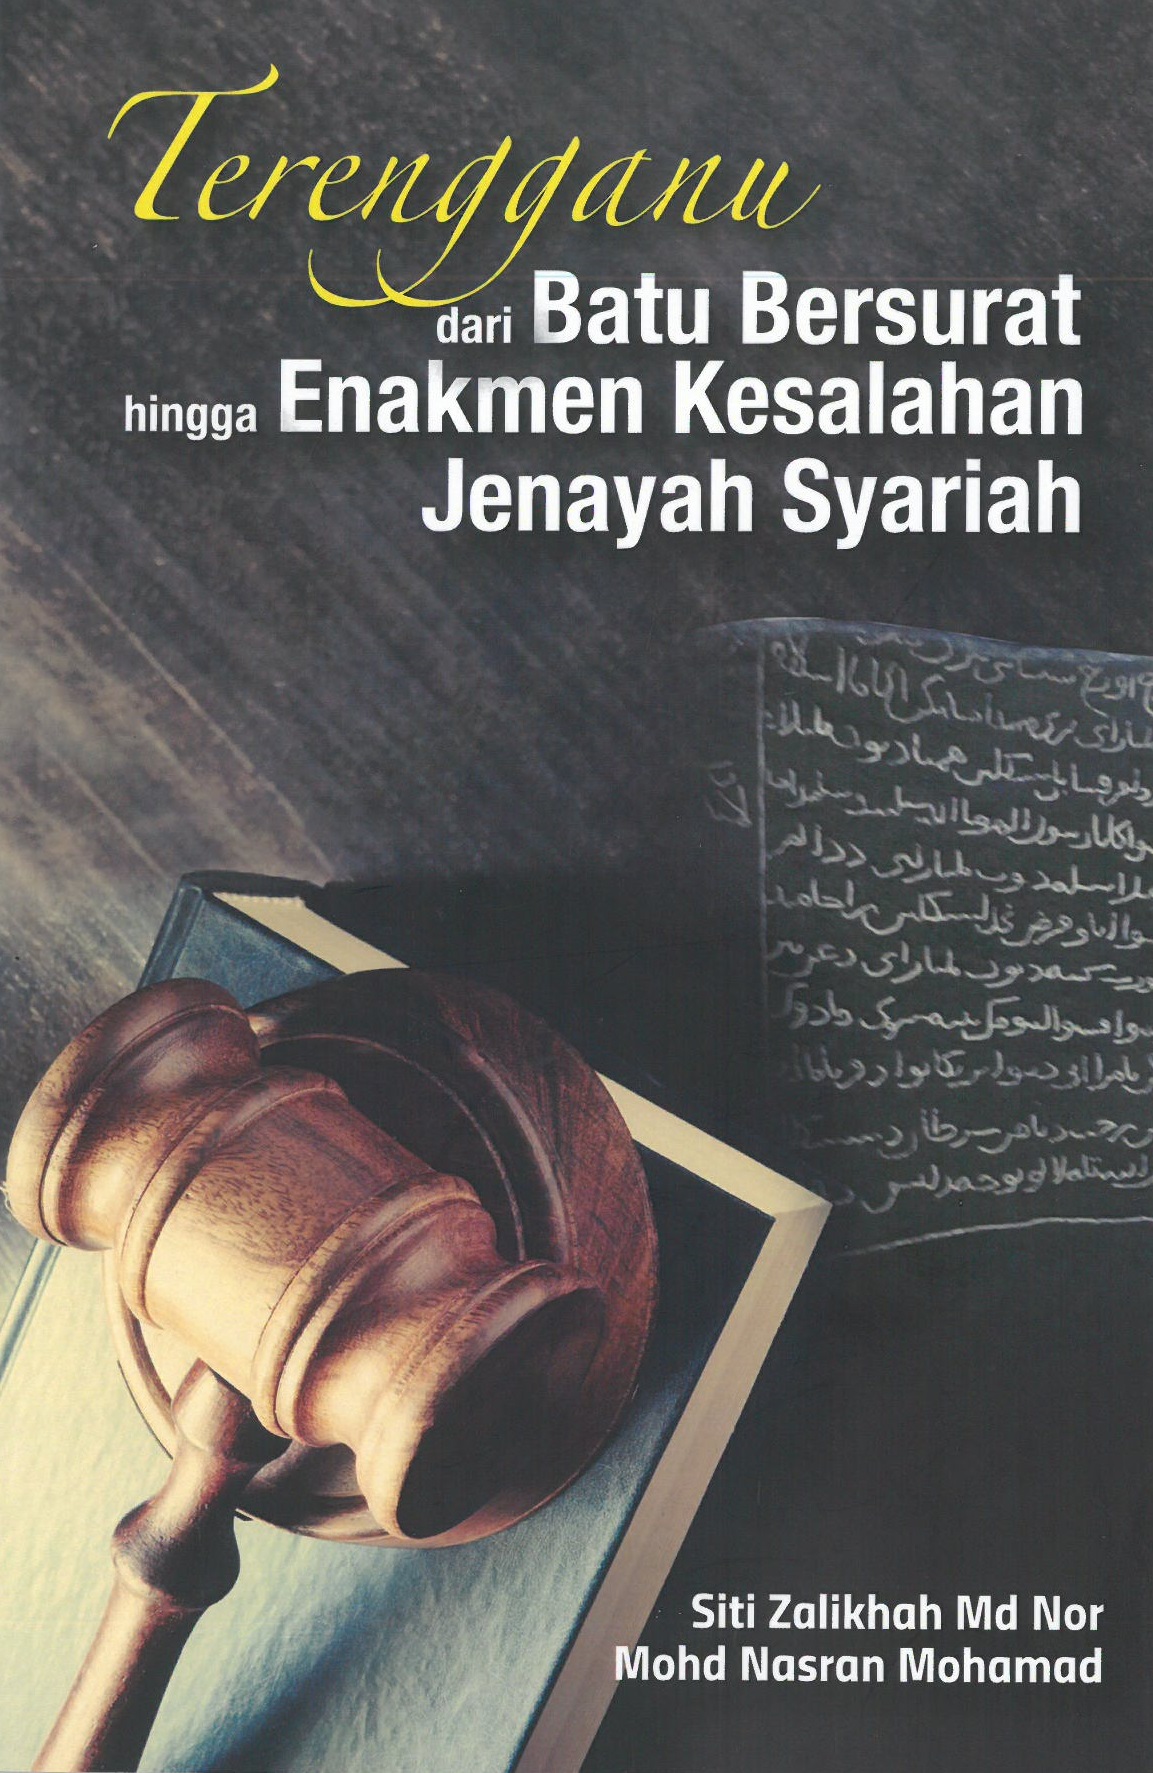 Terengganu: dari Batu Bersurat hingga Enekmen Kesalahan Jenayah Syariah - Malaysia's Online Bookstore"